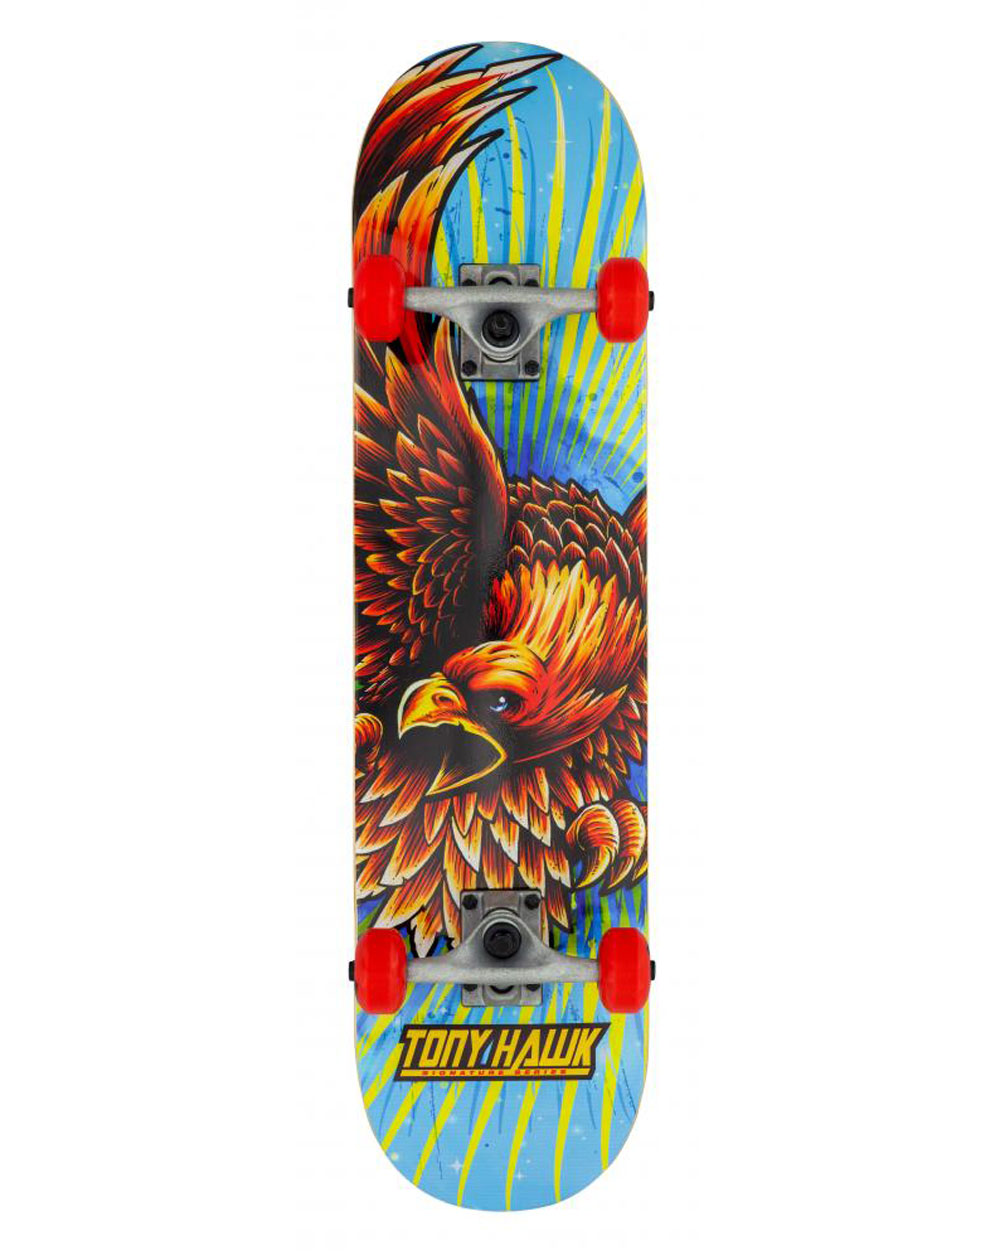 Tony Hawk Skateboard Complète Golden Hawk 7.75"